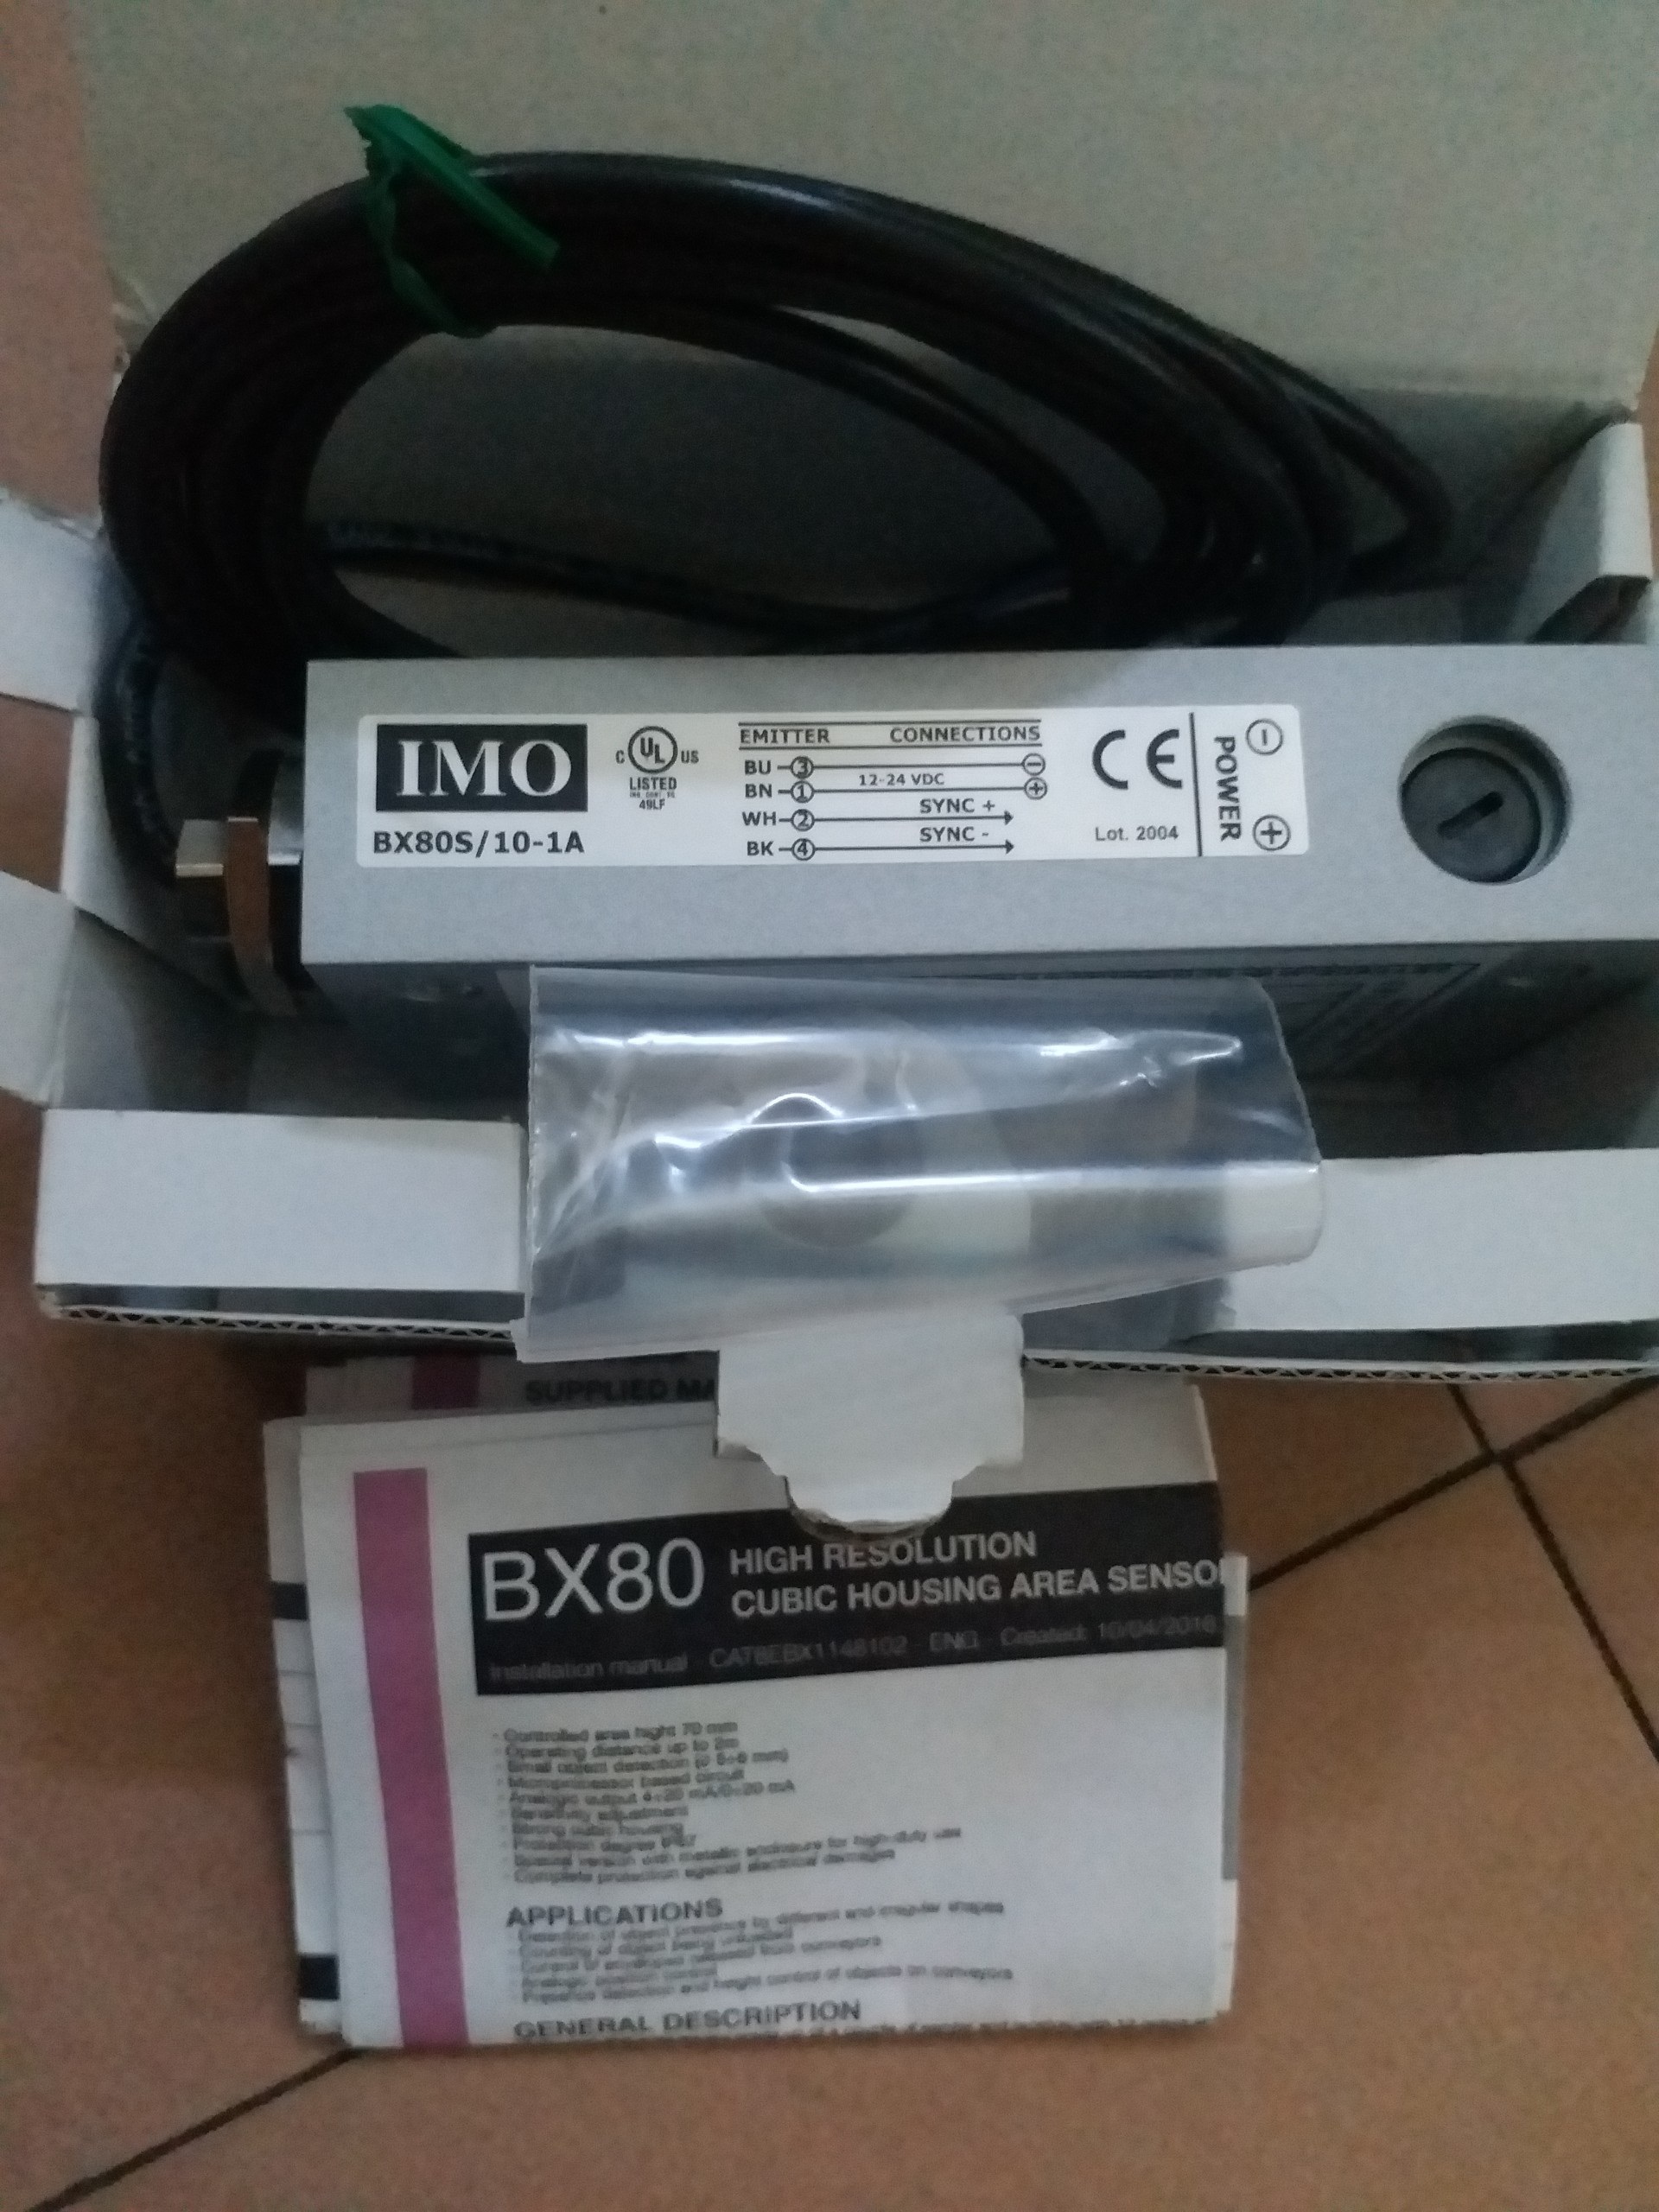 cam-bien-quang-bx80s-10-1a-sensor.png